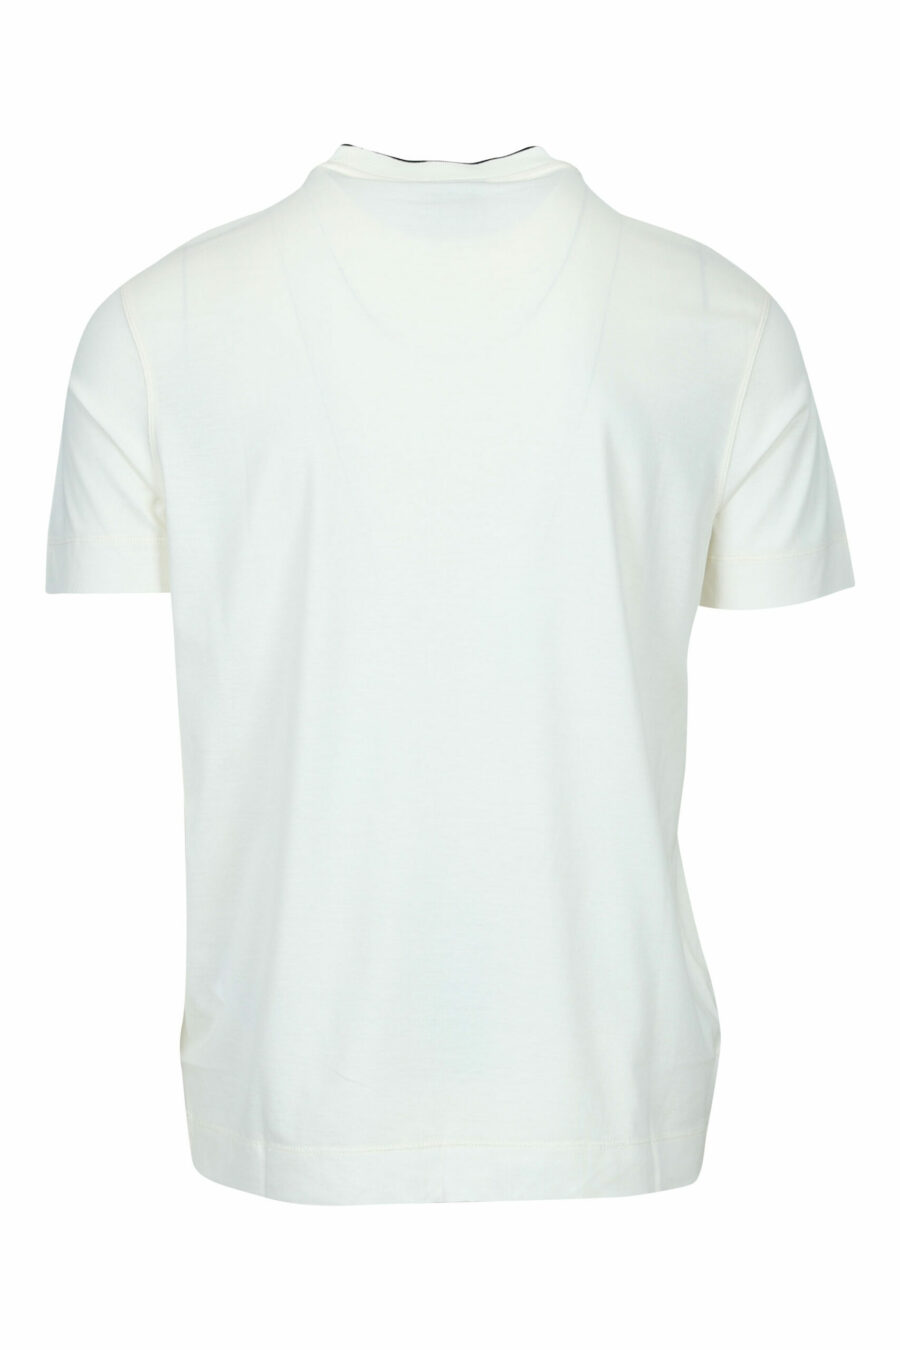 Camiseta color crema con maxilogo águila centrado - 8058947986996 1 scaled